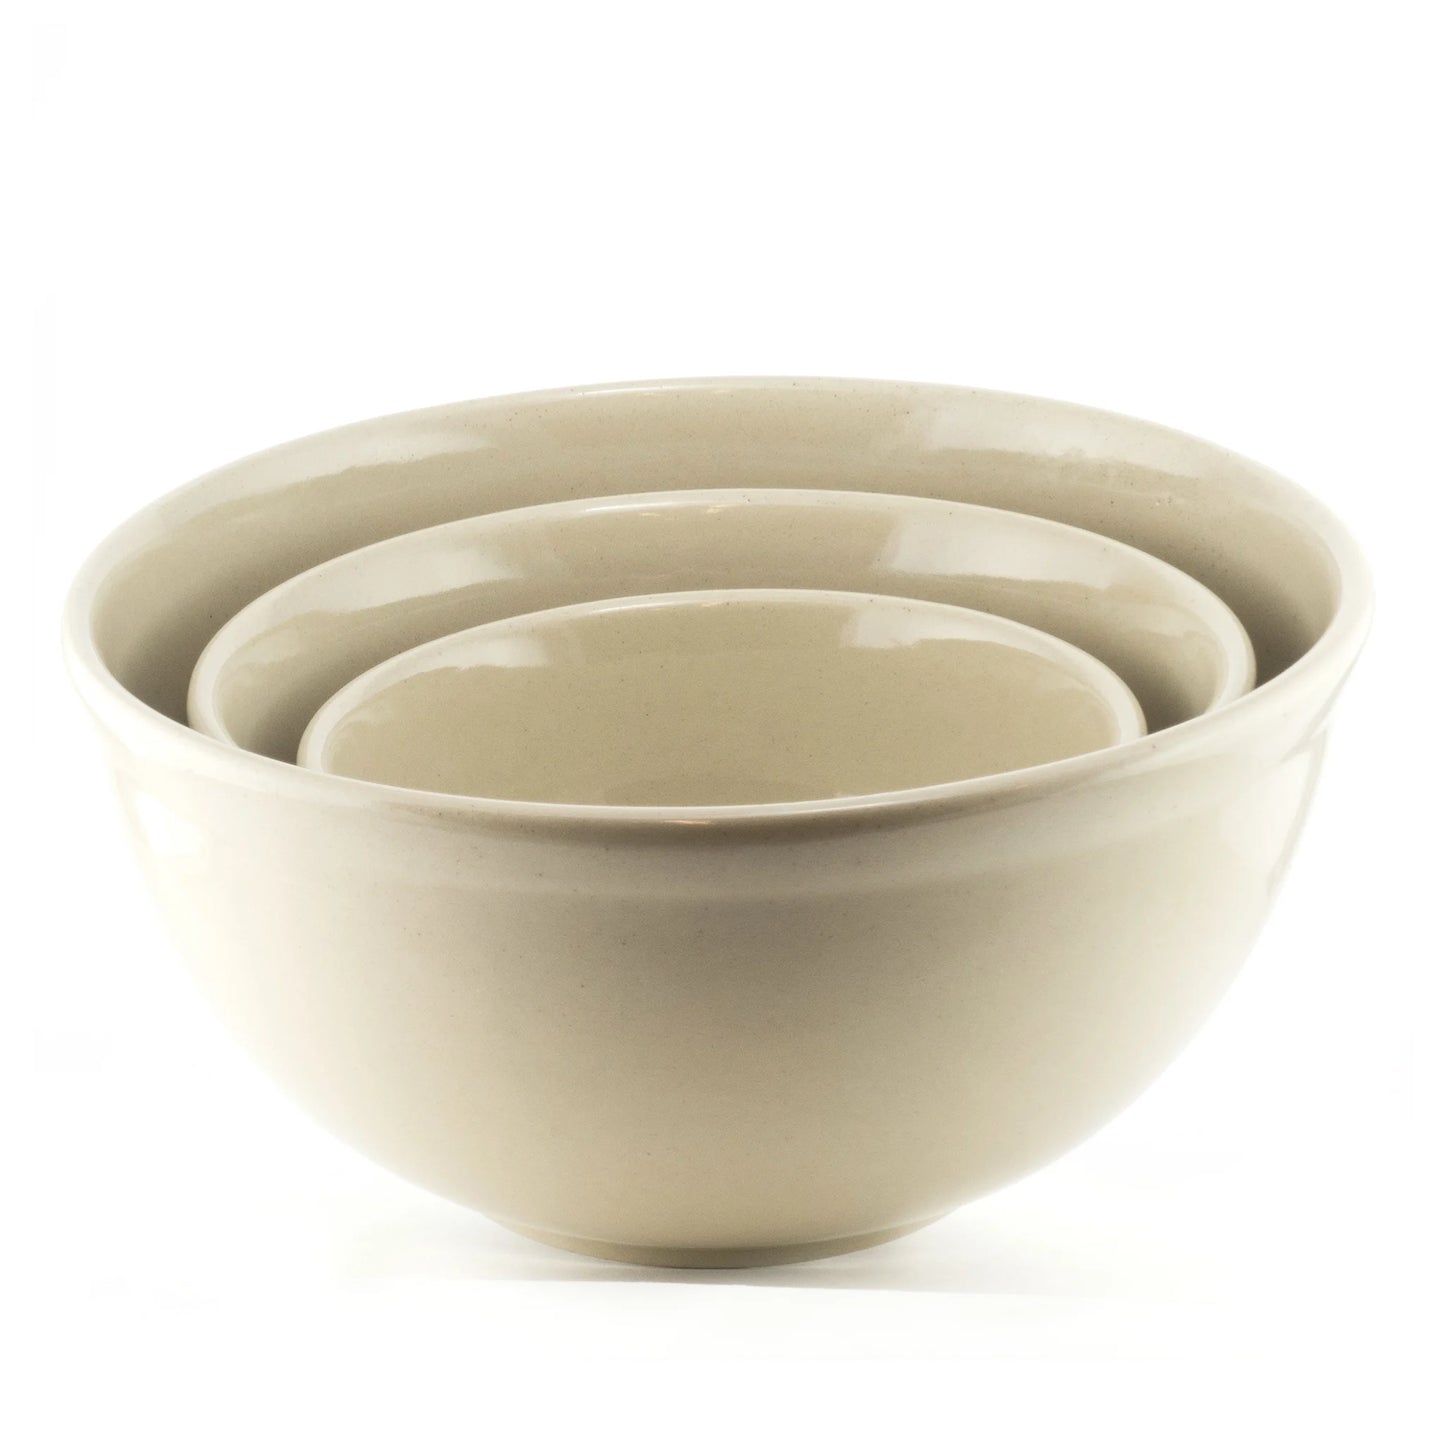 Medalta 8" bowl plain